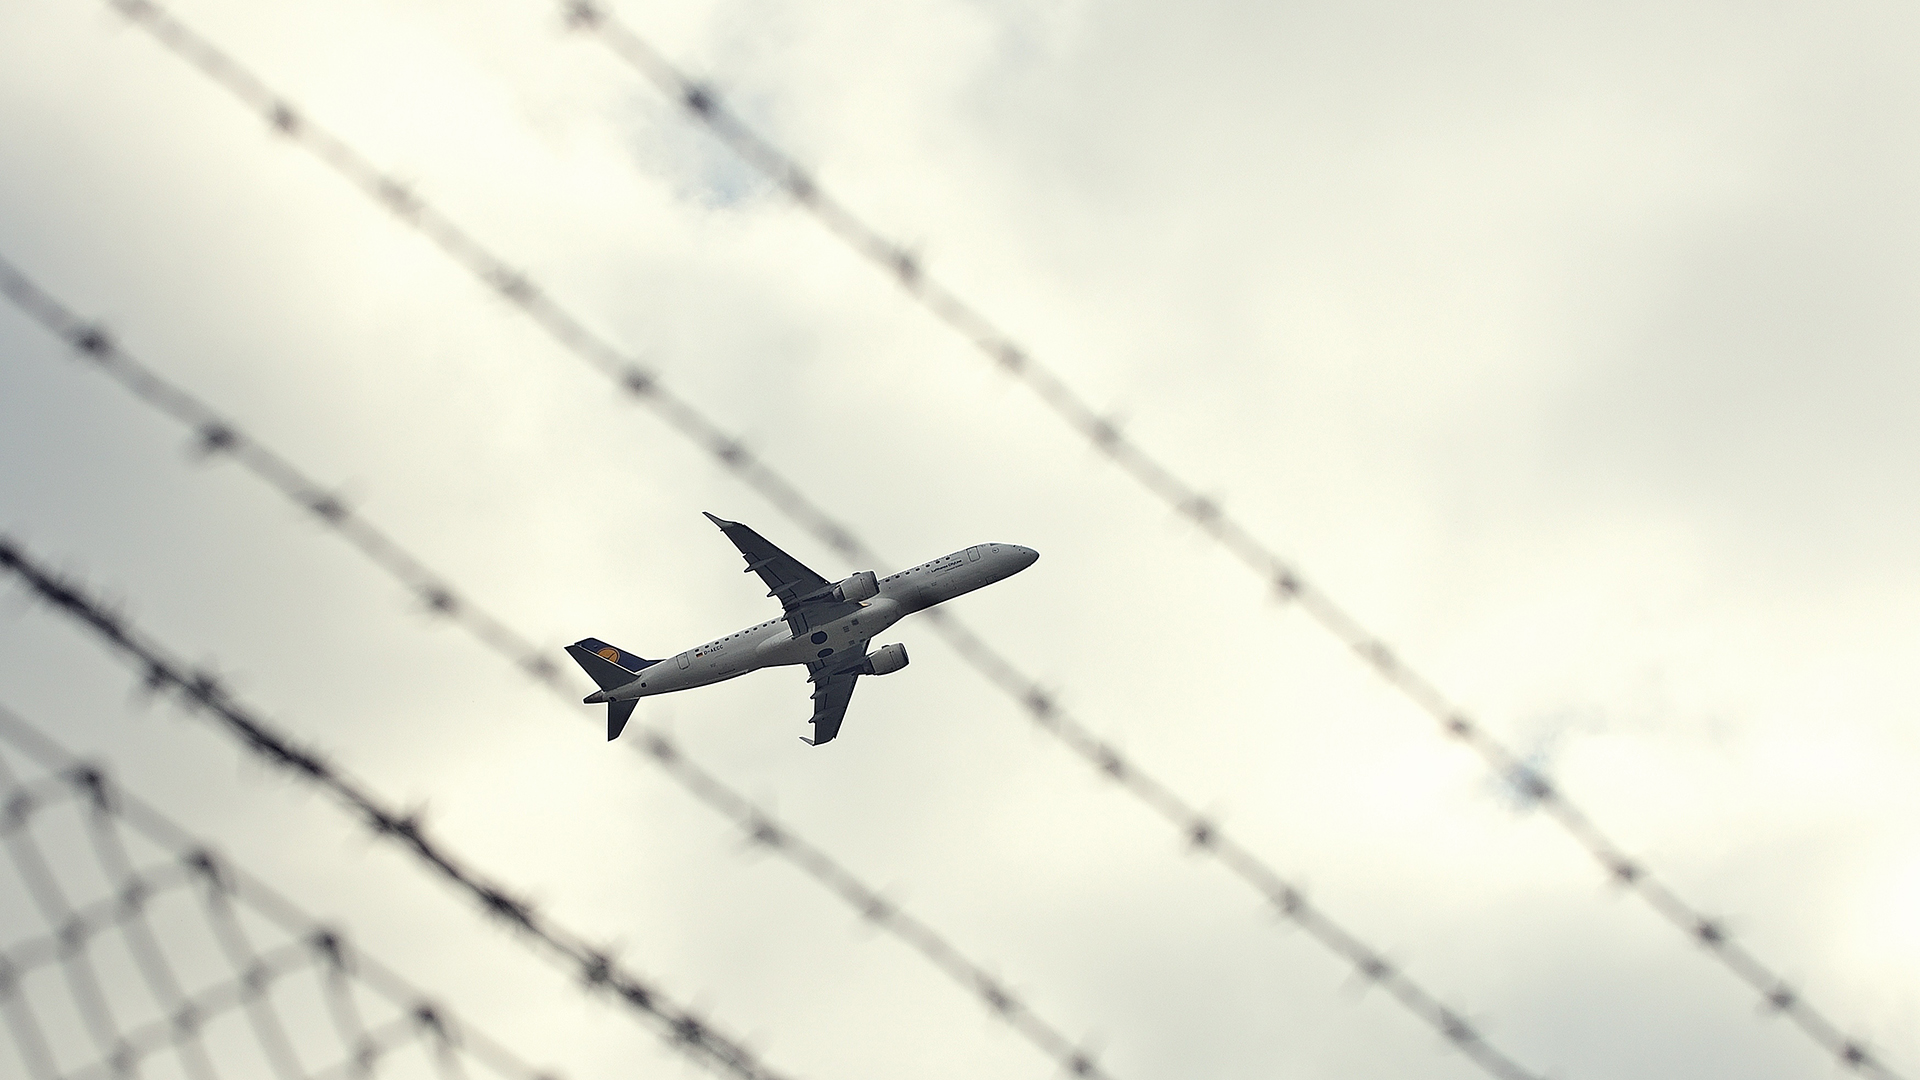 Startendes Flugzeug durch einen Zaun fotografiert | picture alliance / Daniel Kubirs